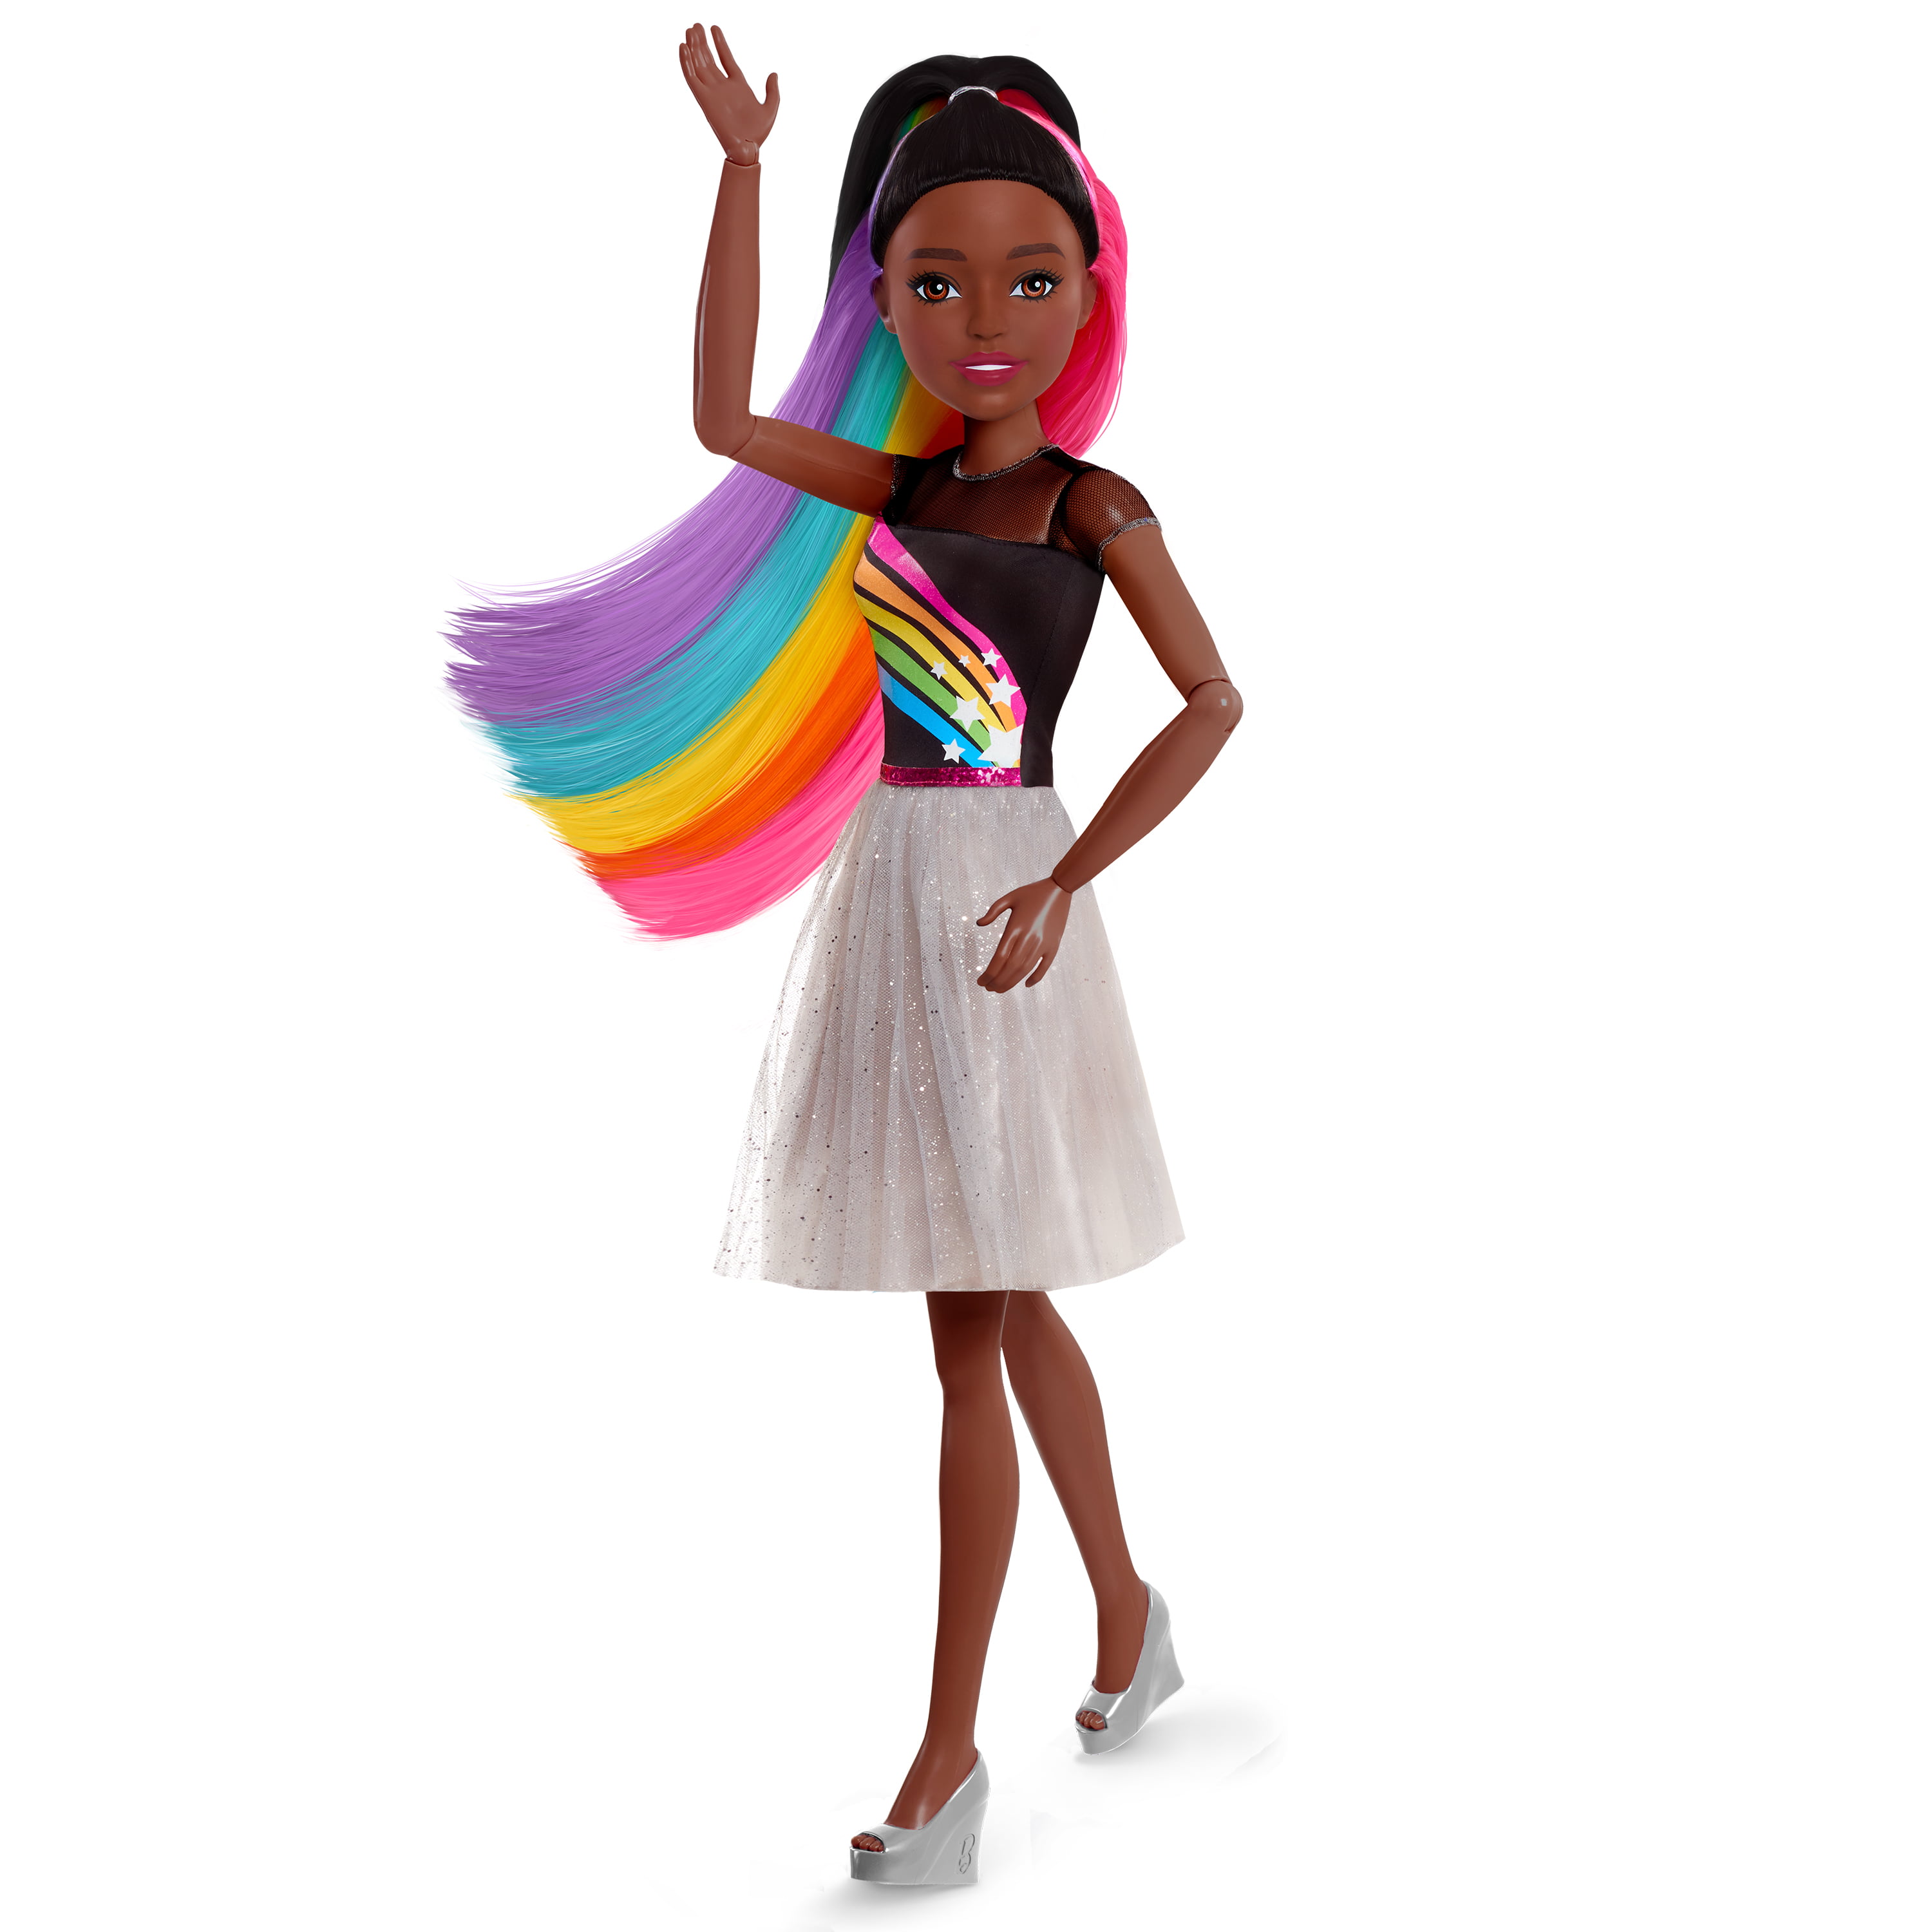 barbie rainbow hair doll instructions